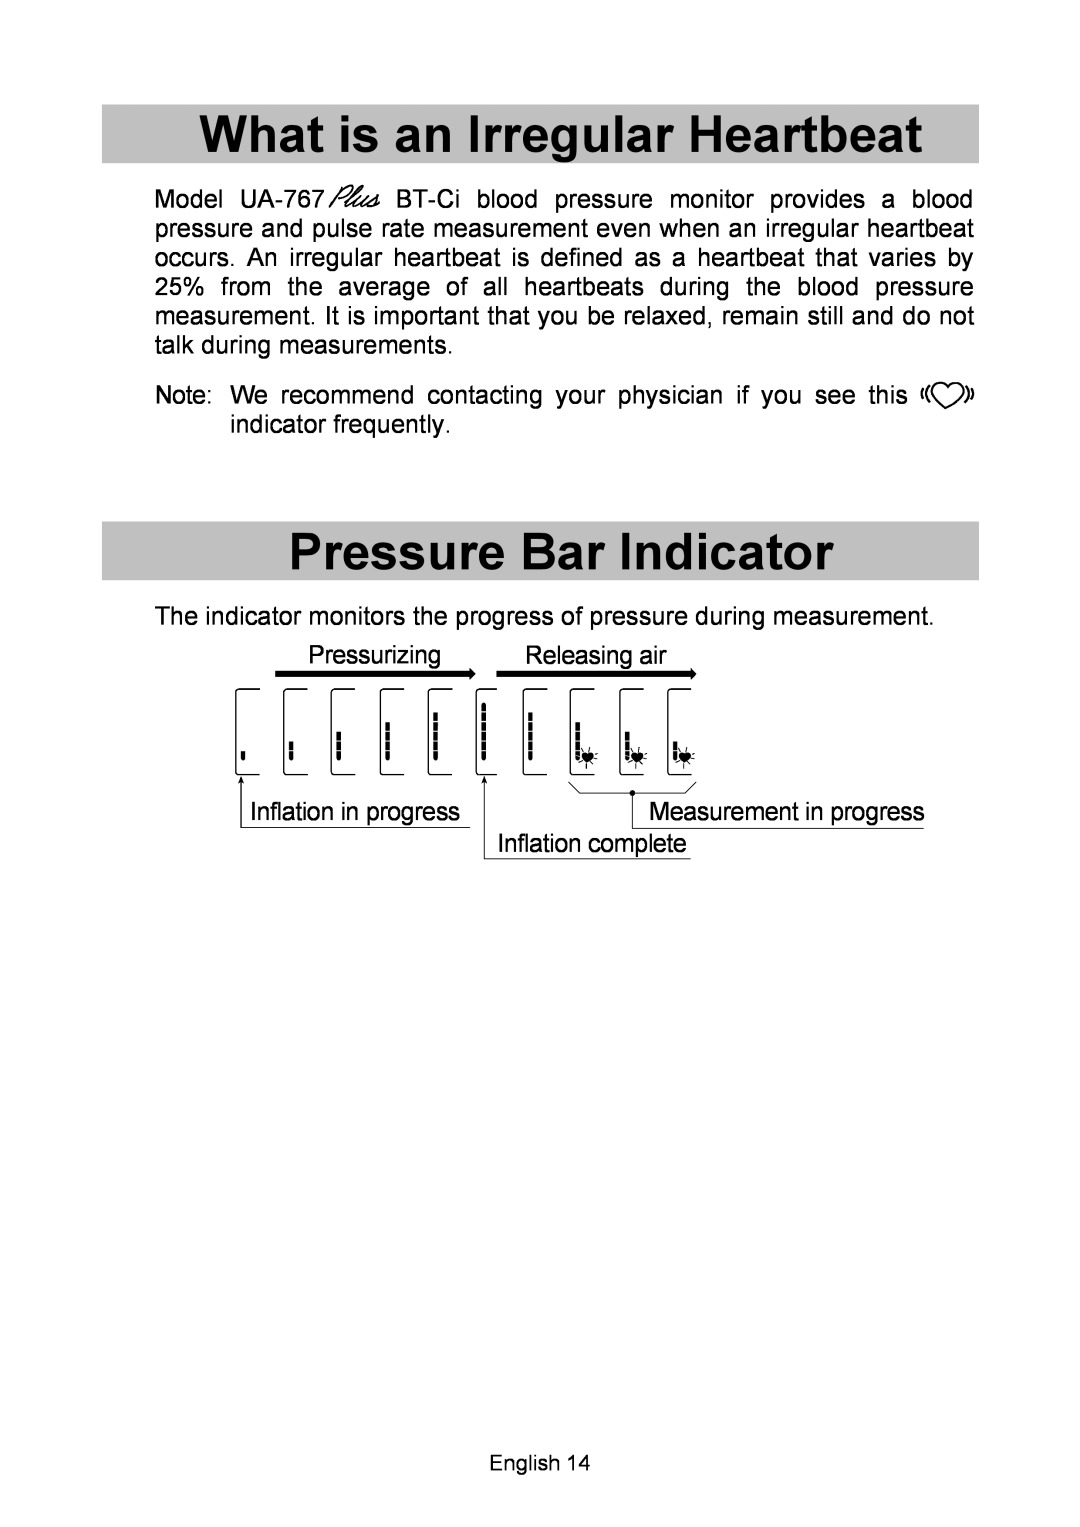 A&D UA-767, BT-Ci instruction manual What is an Irregular Heartbeat, Pressure Bar Indicator, Releasing air 